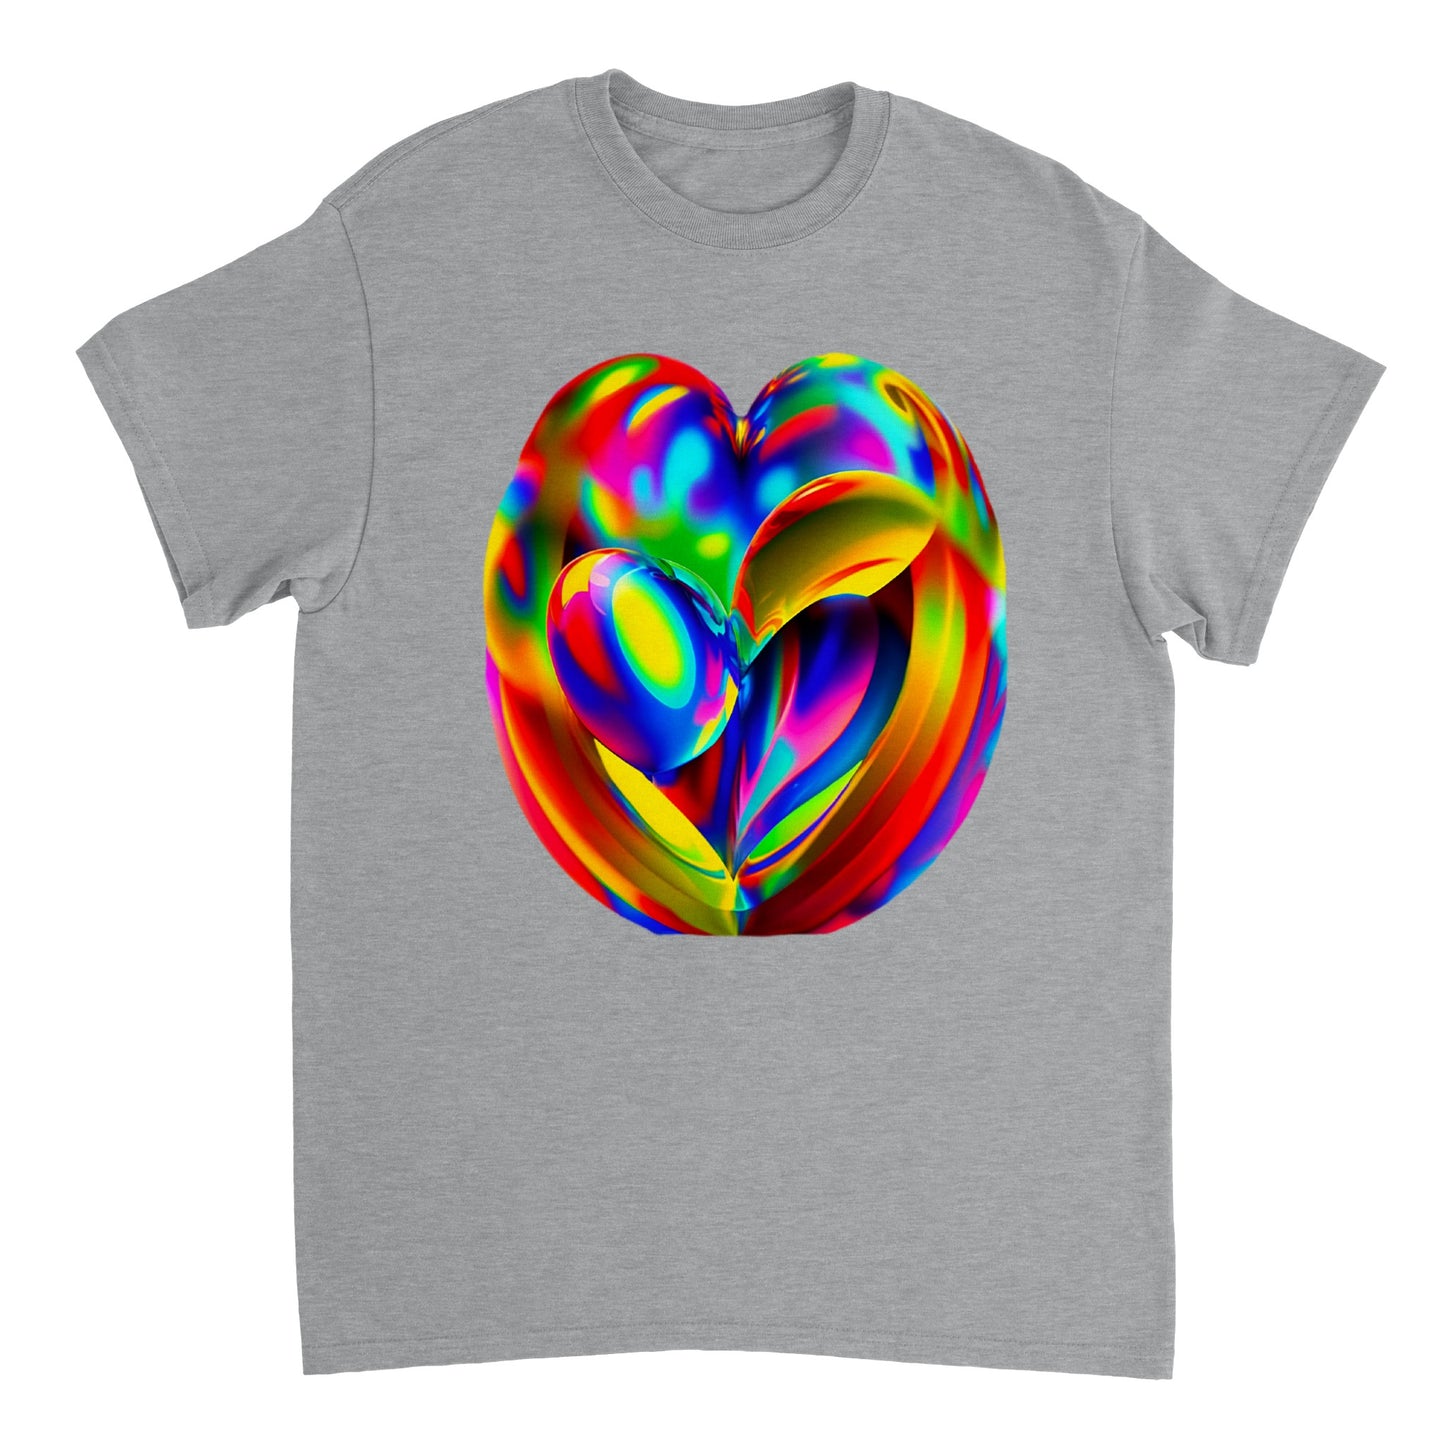 Love Heart - Heavyweight Unisex Crewneck T-shirt 56